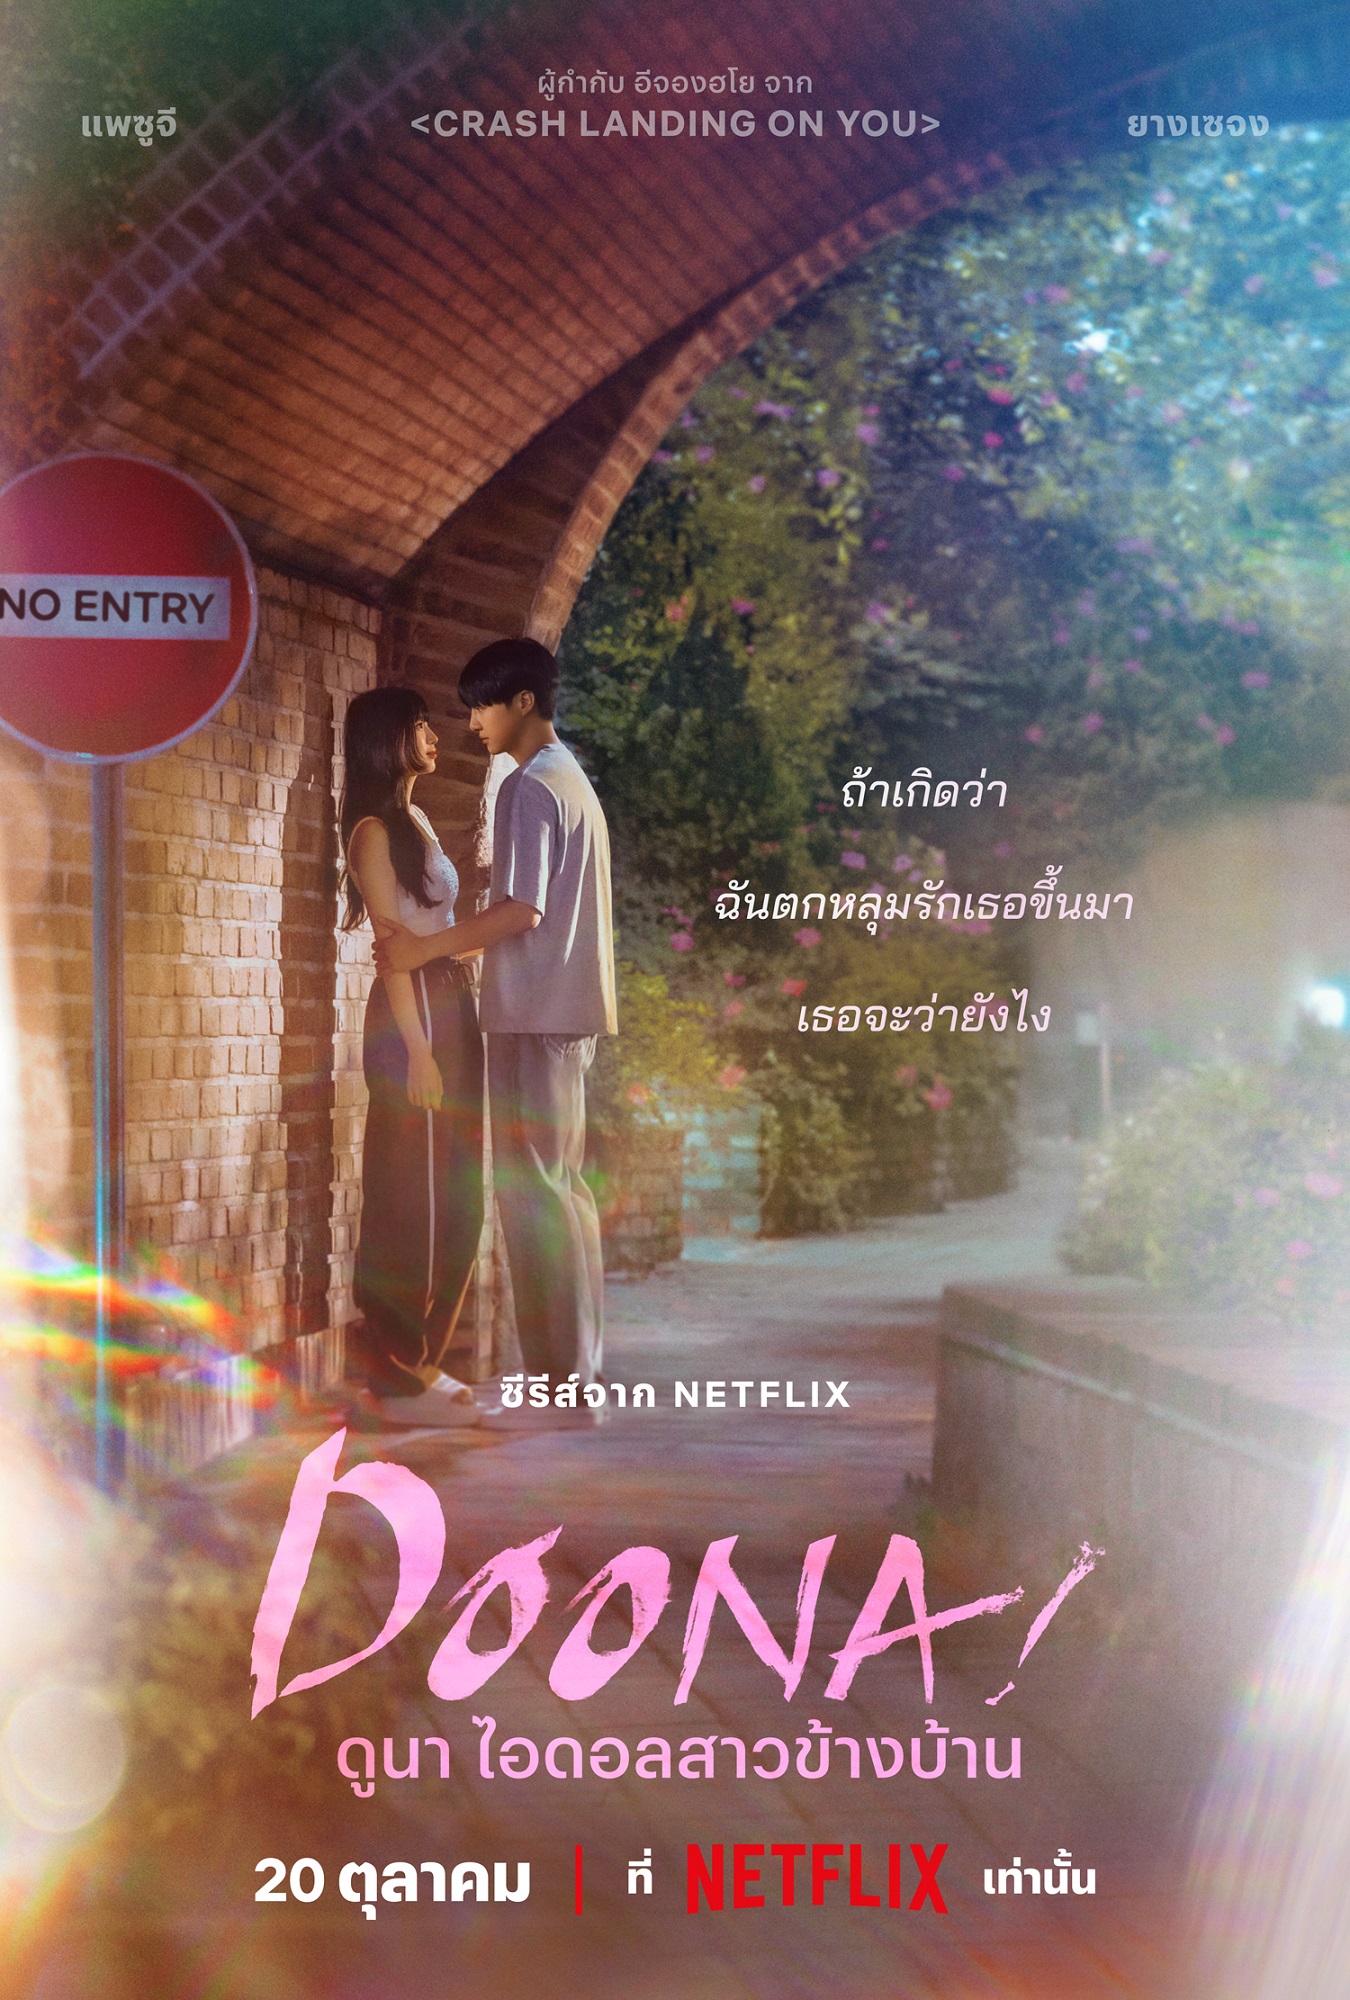 Doona Netflix ดูนา ไอดอลสาวข้างบ้าน